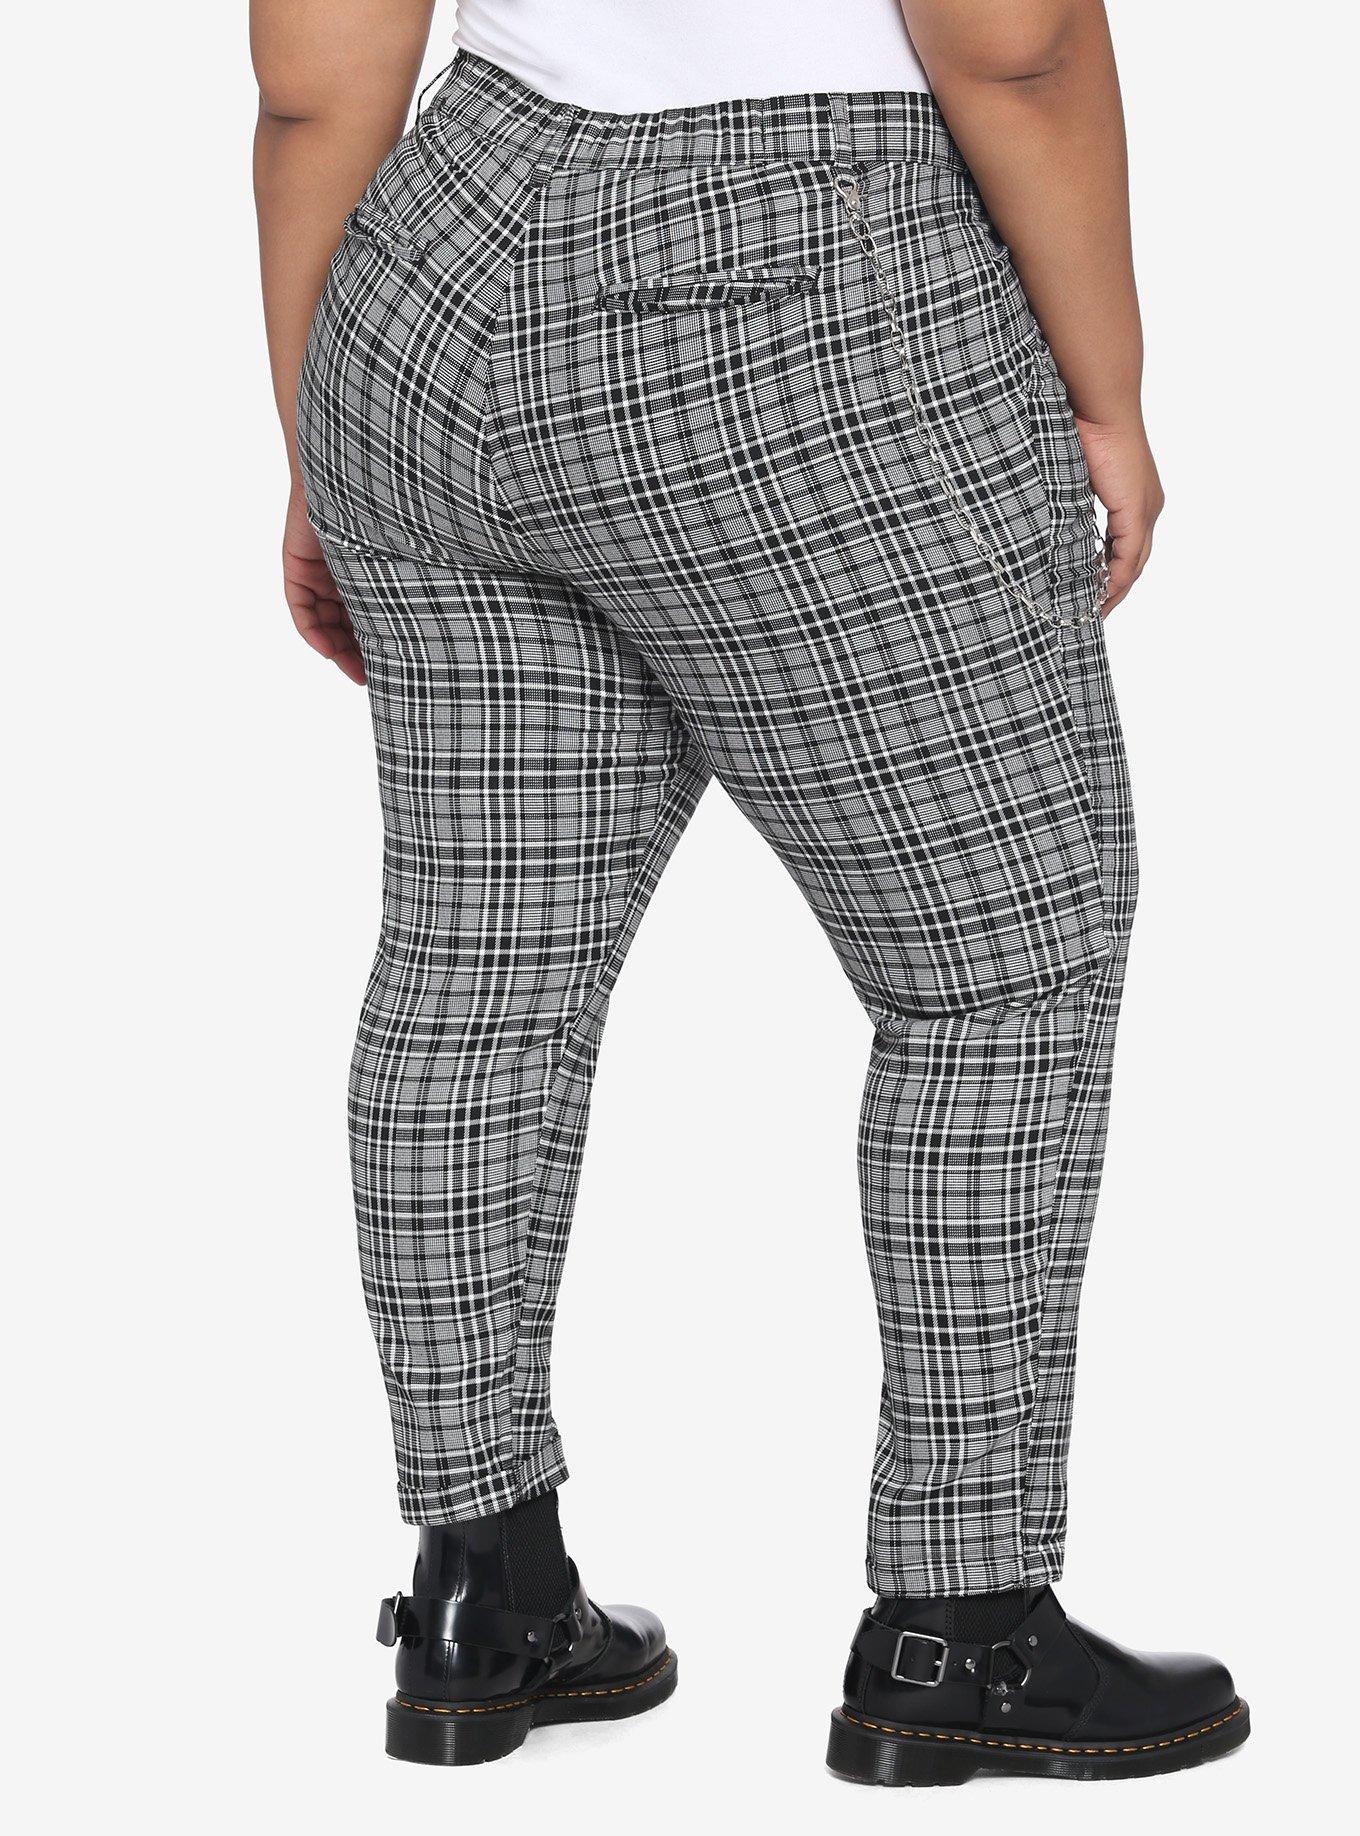 Grey Plaid Pants With Detachable Chain Plus Size, PLAID - GREY, alternate